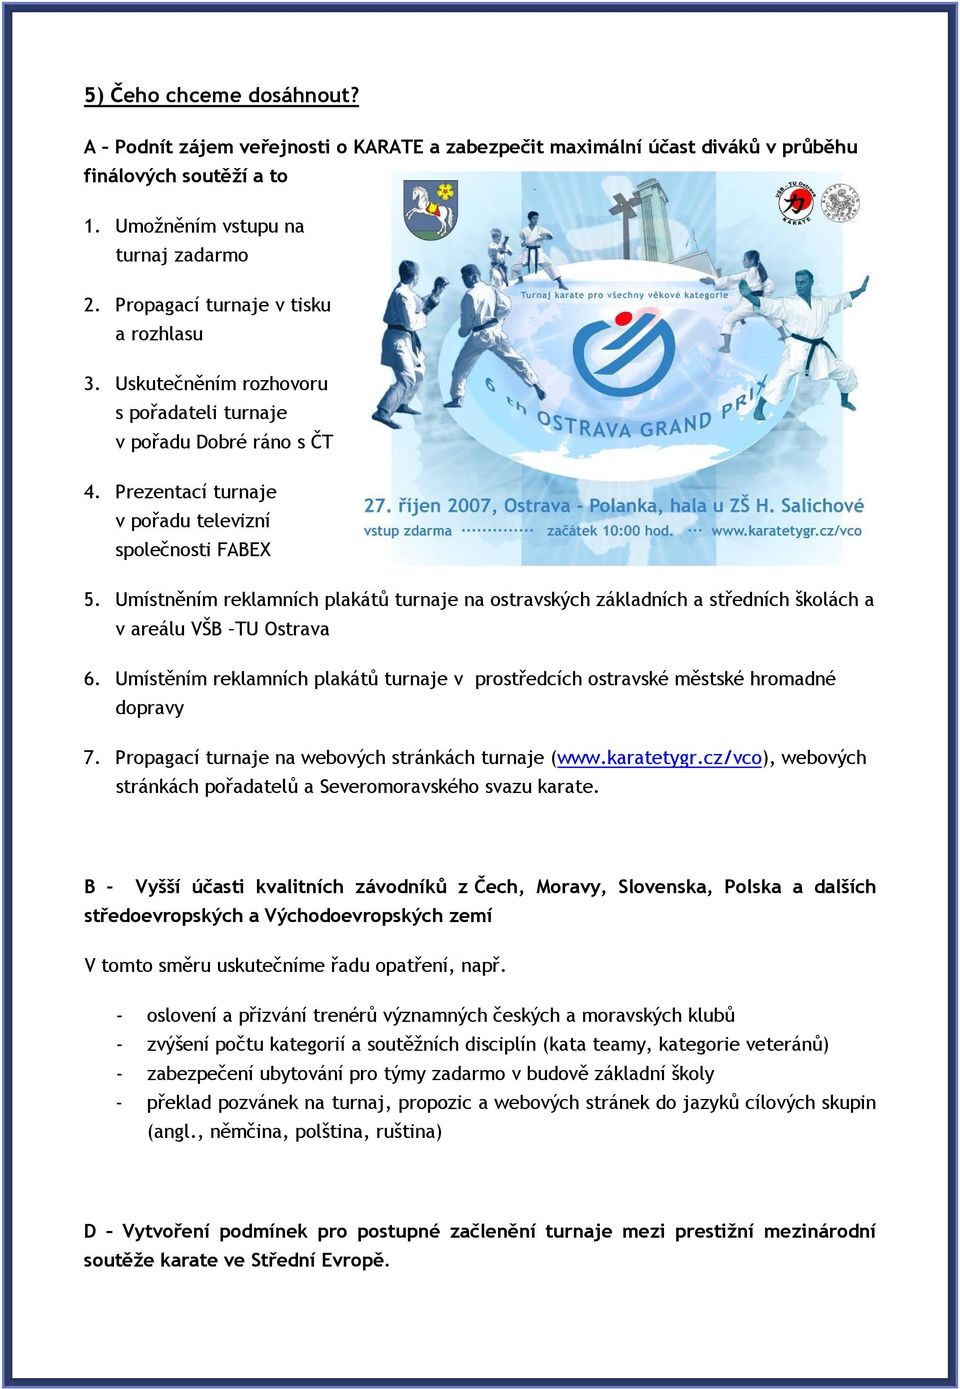 Umístněním reklamních plakátů turnaje na ostravských základních a středních školách a v areálu VŠB TU Ostrava 6.